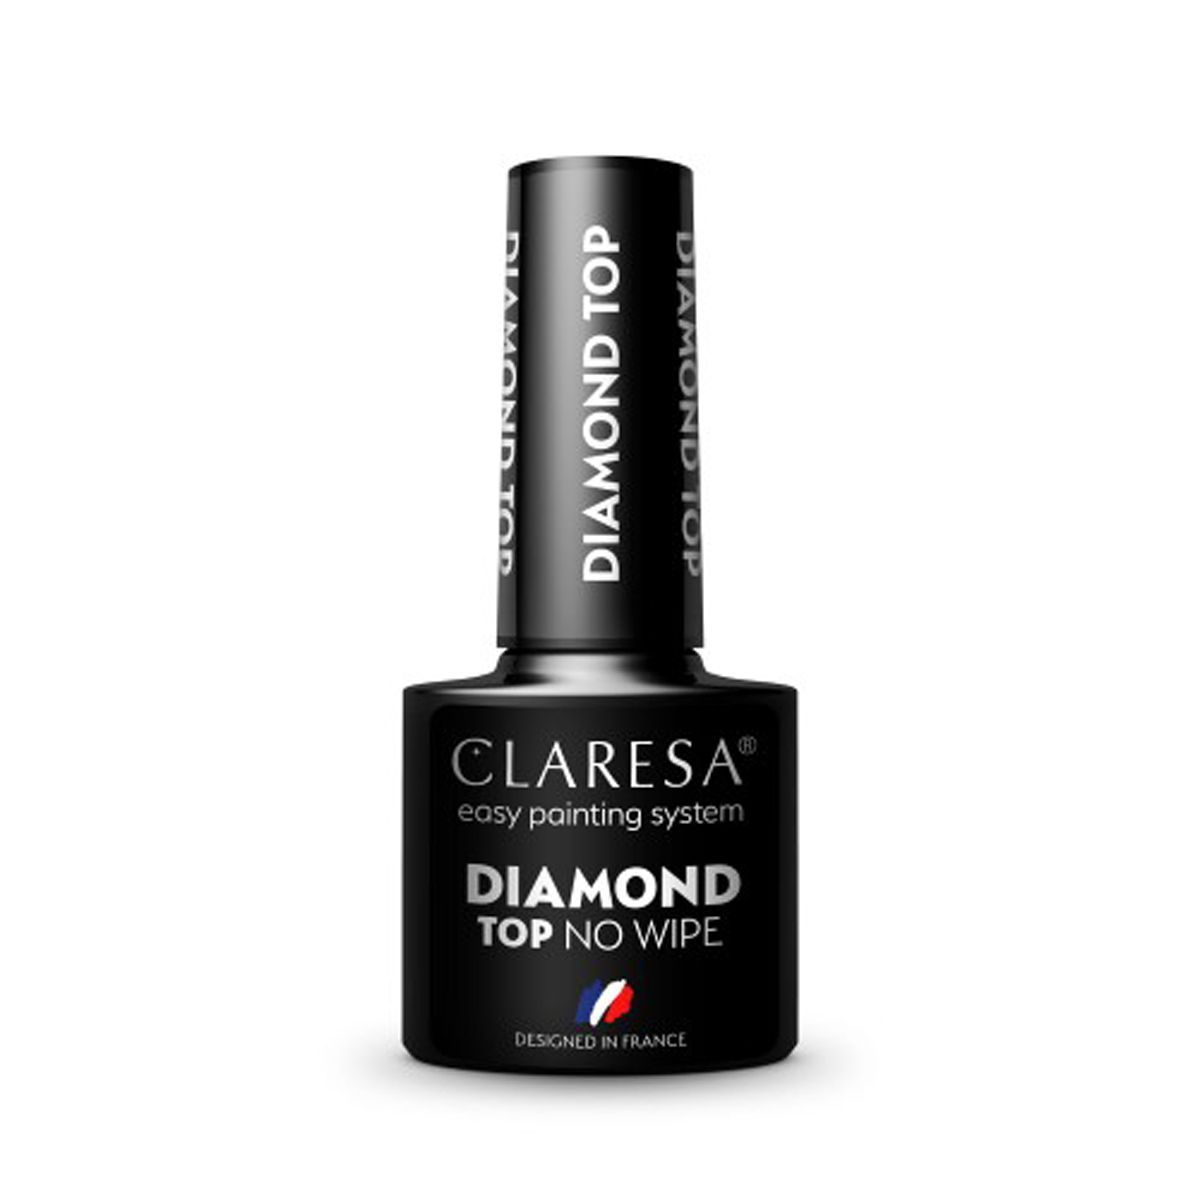 CLARESA TOP DIAMOND NO WIPE - 5g